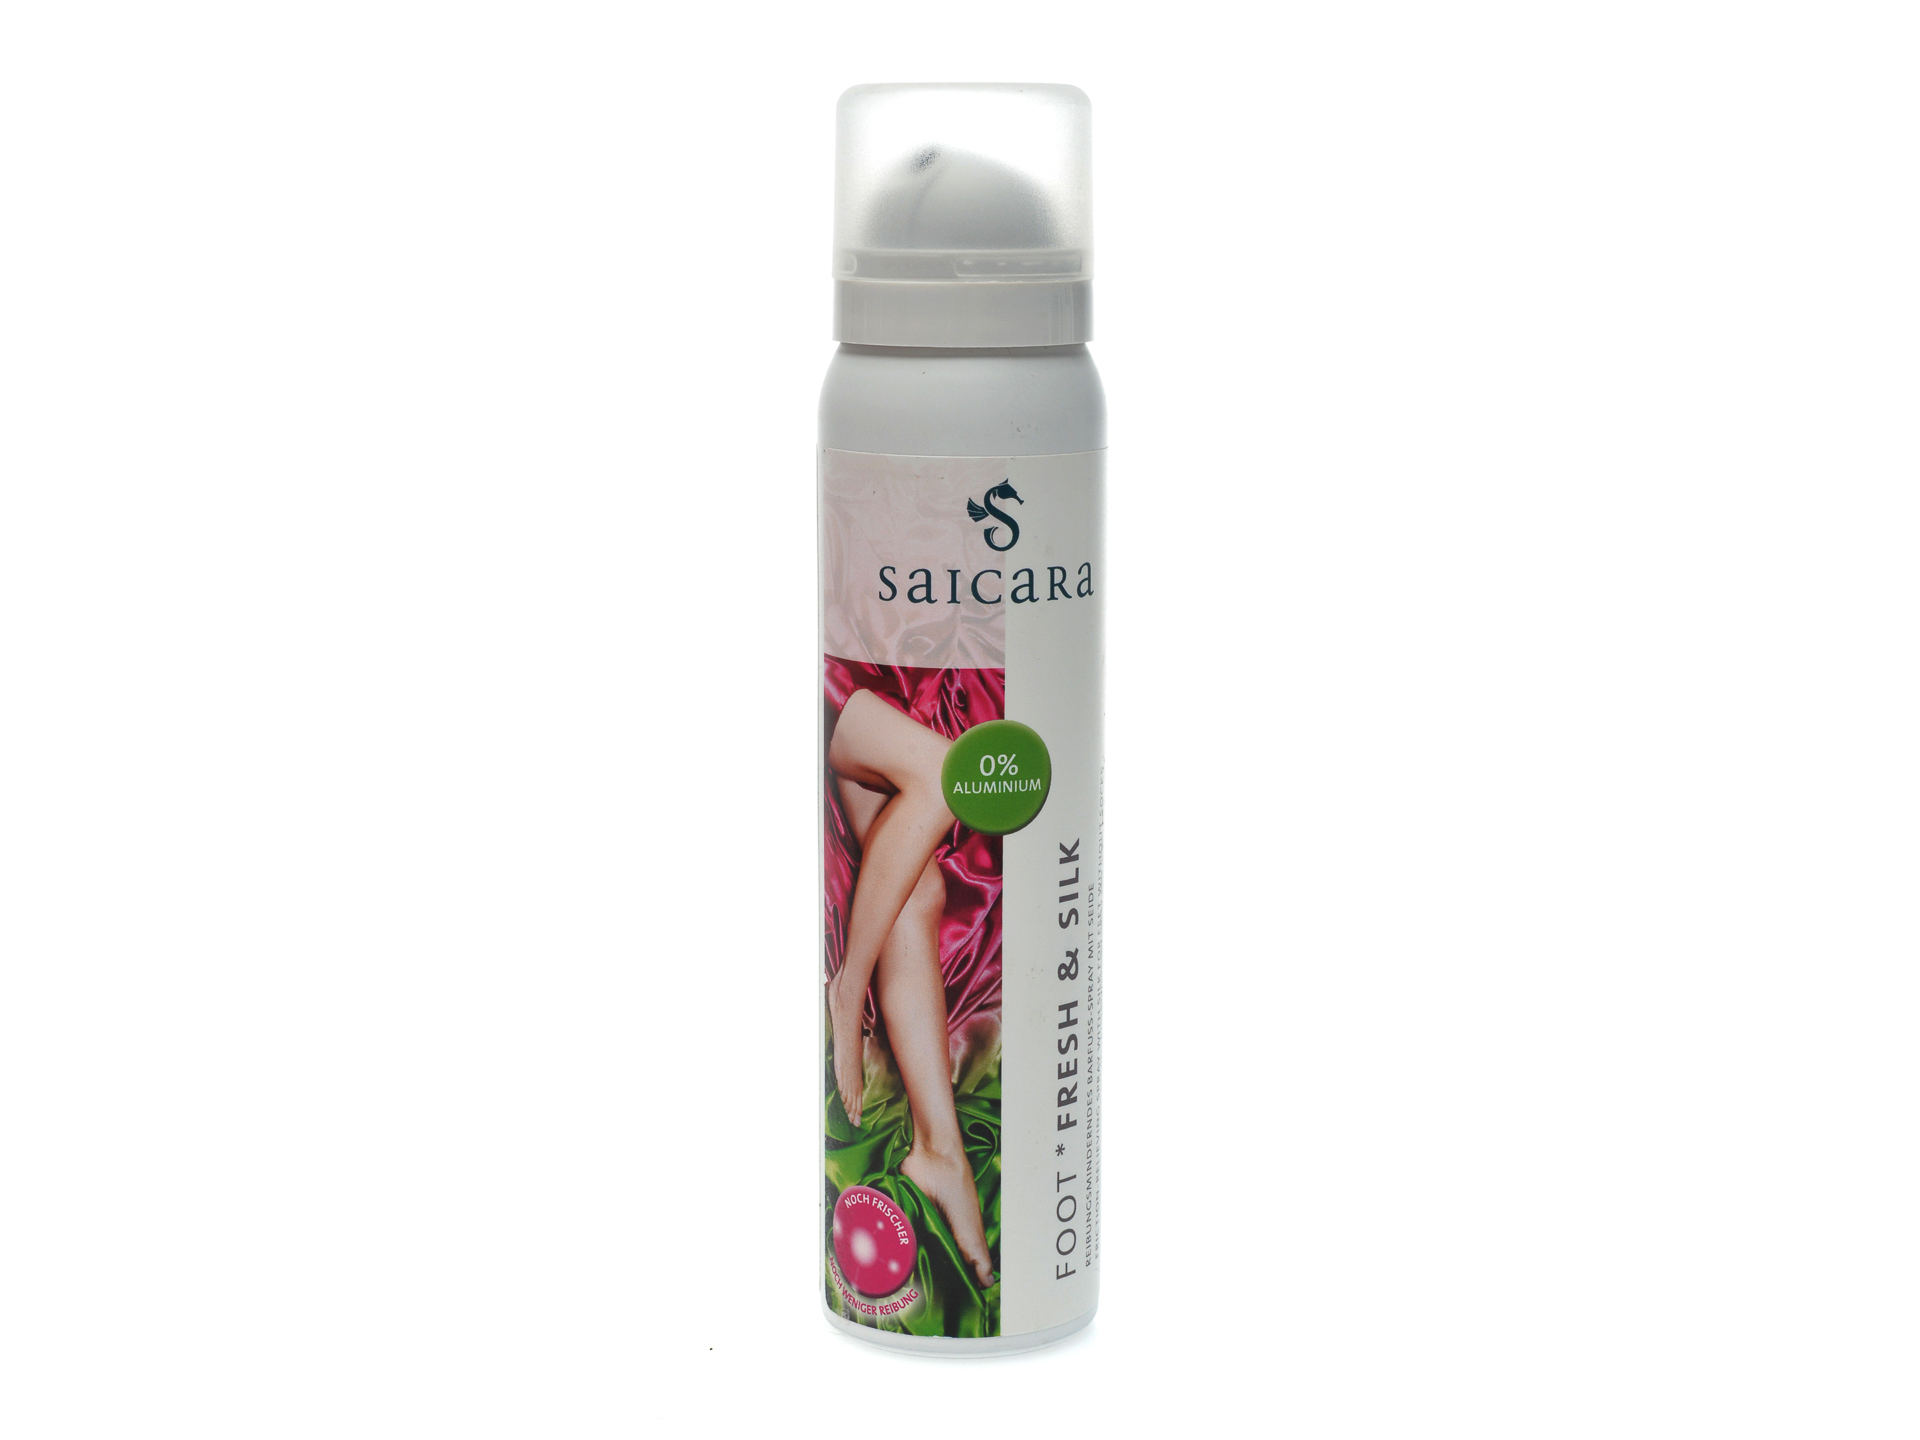 PR Spray-deodorant pentru picioare, Solitaire otter.ro imagine 2022 13clothing.ro